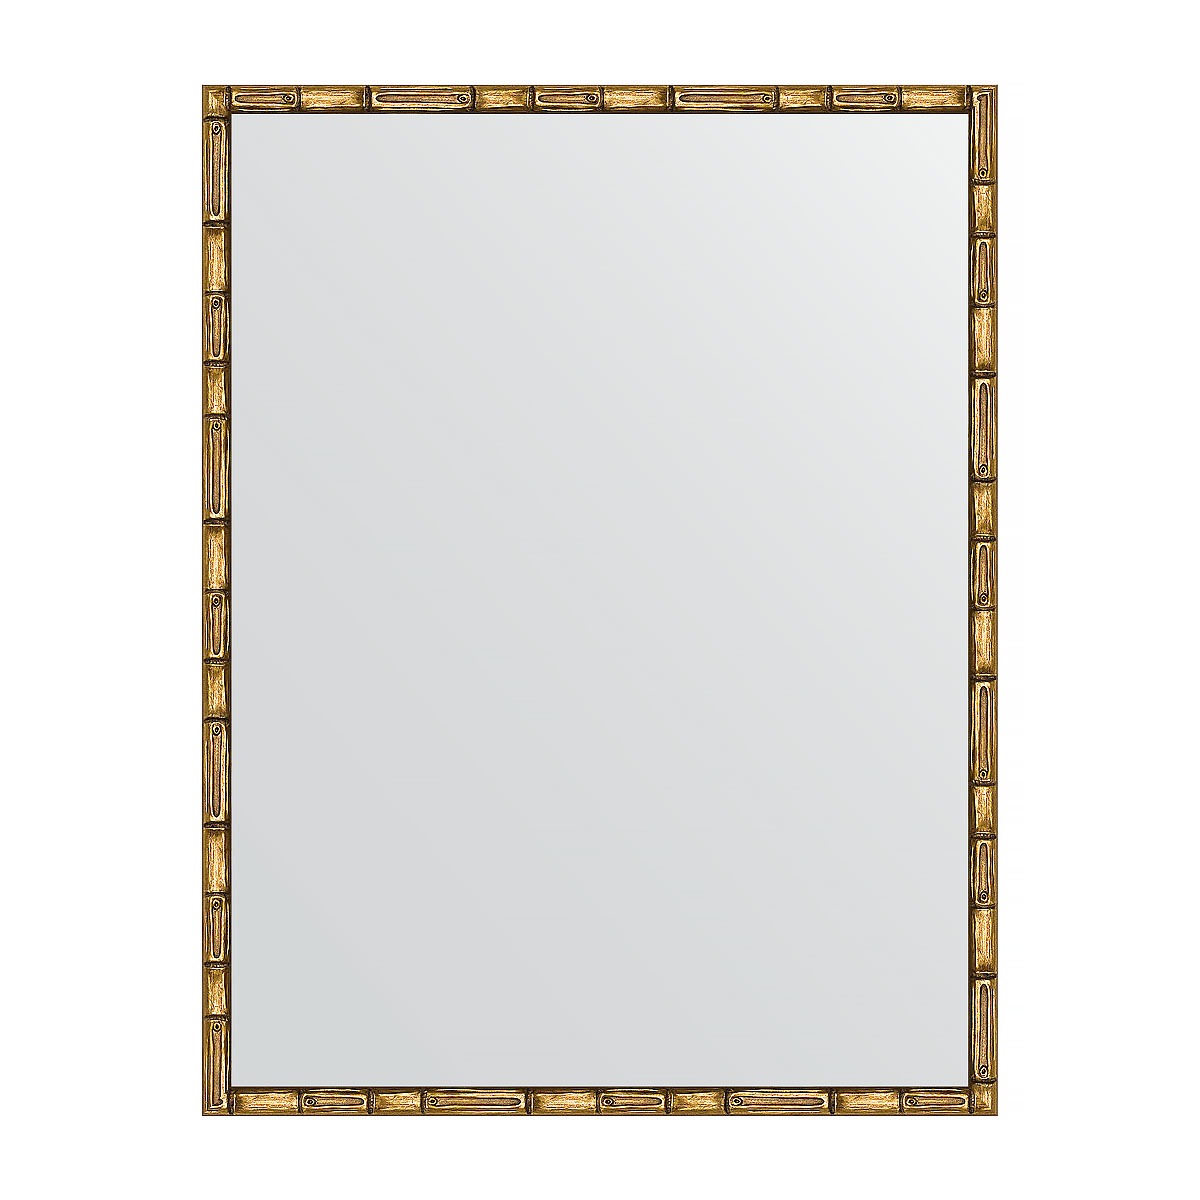 Зеркало в багетной раме Evoform золотой бамбук 24 мм 67х87 см зеркало evoform в багетной раме 56х86см bx 1239